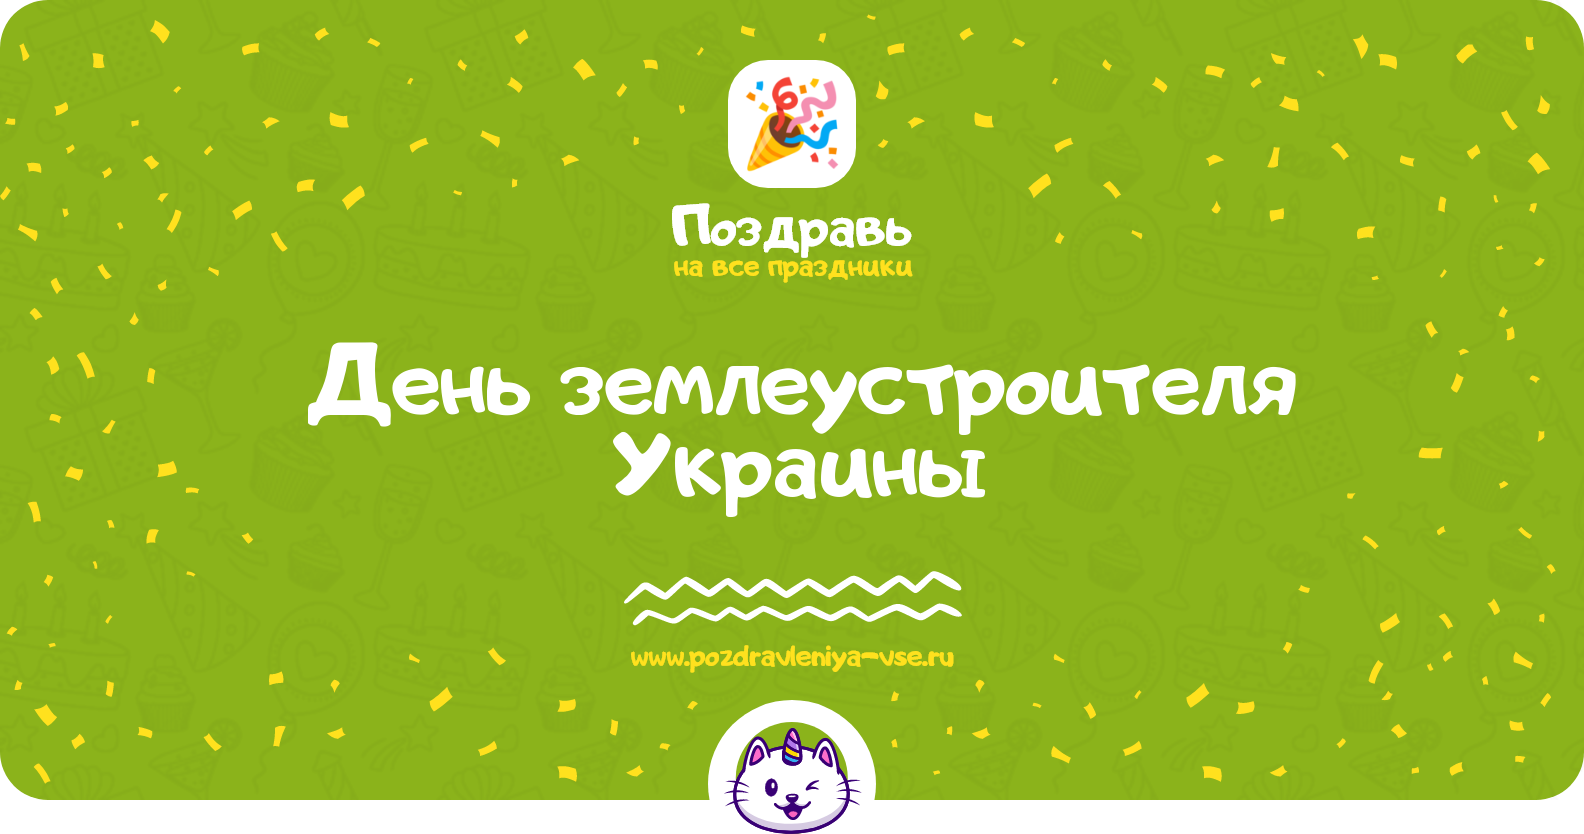 День землеустроителя Украины — дата праздника, история, поздравления, стихи, смс